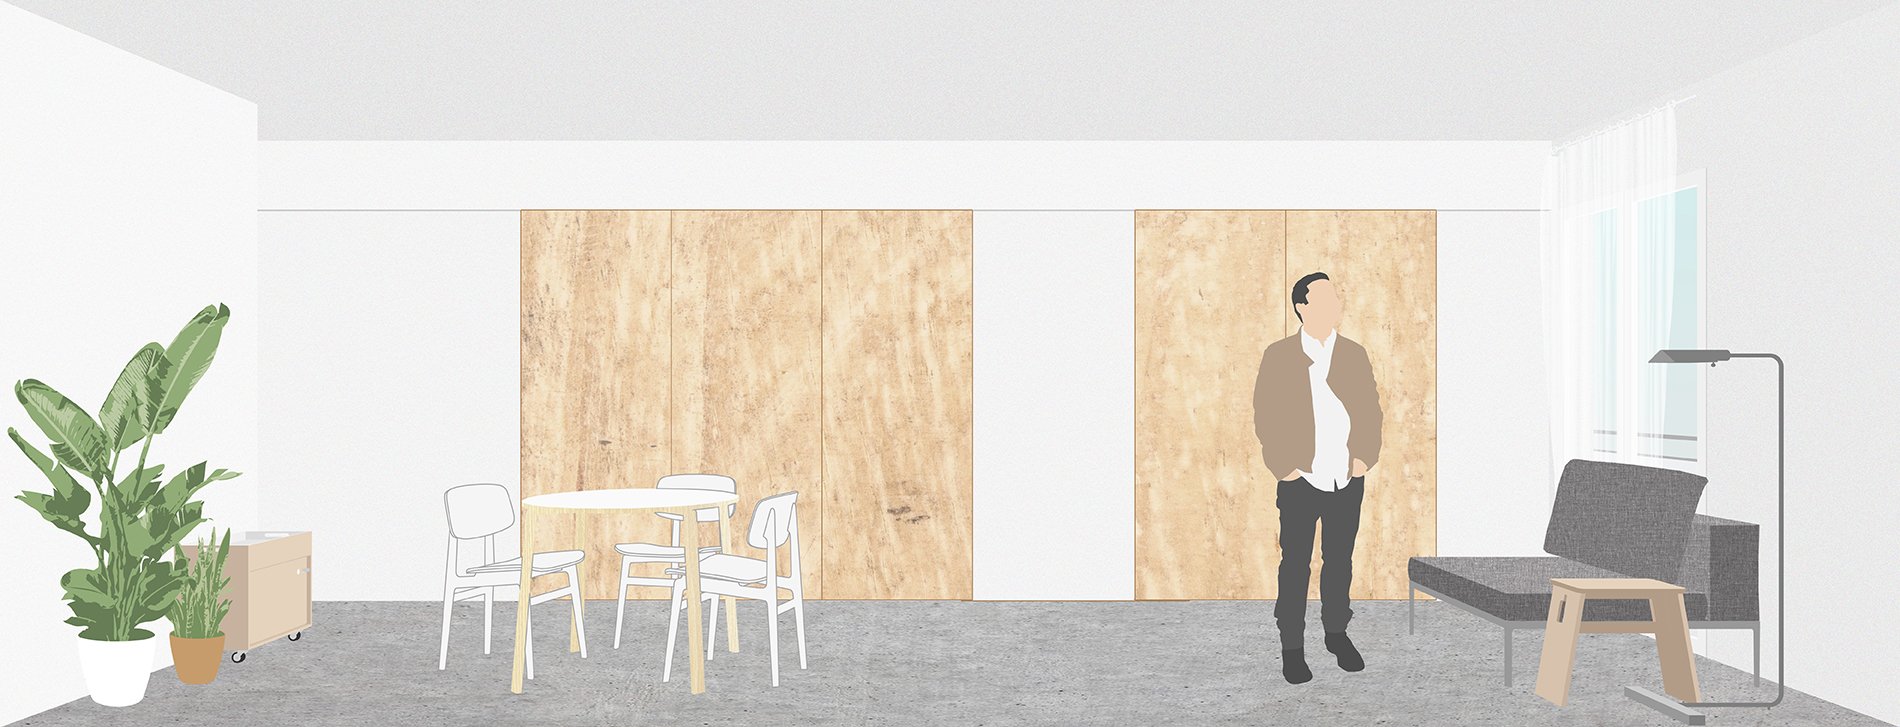 Kottage - Apartment 01 Presentation - Visualisation 2.jpg